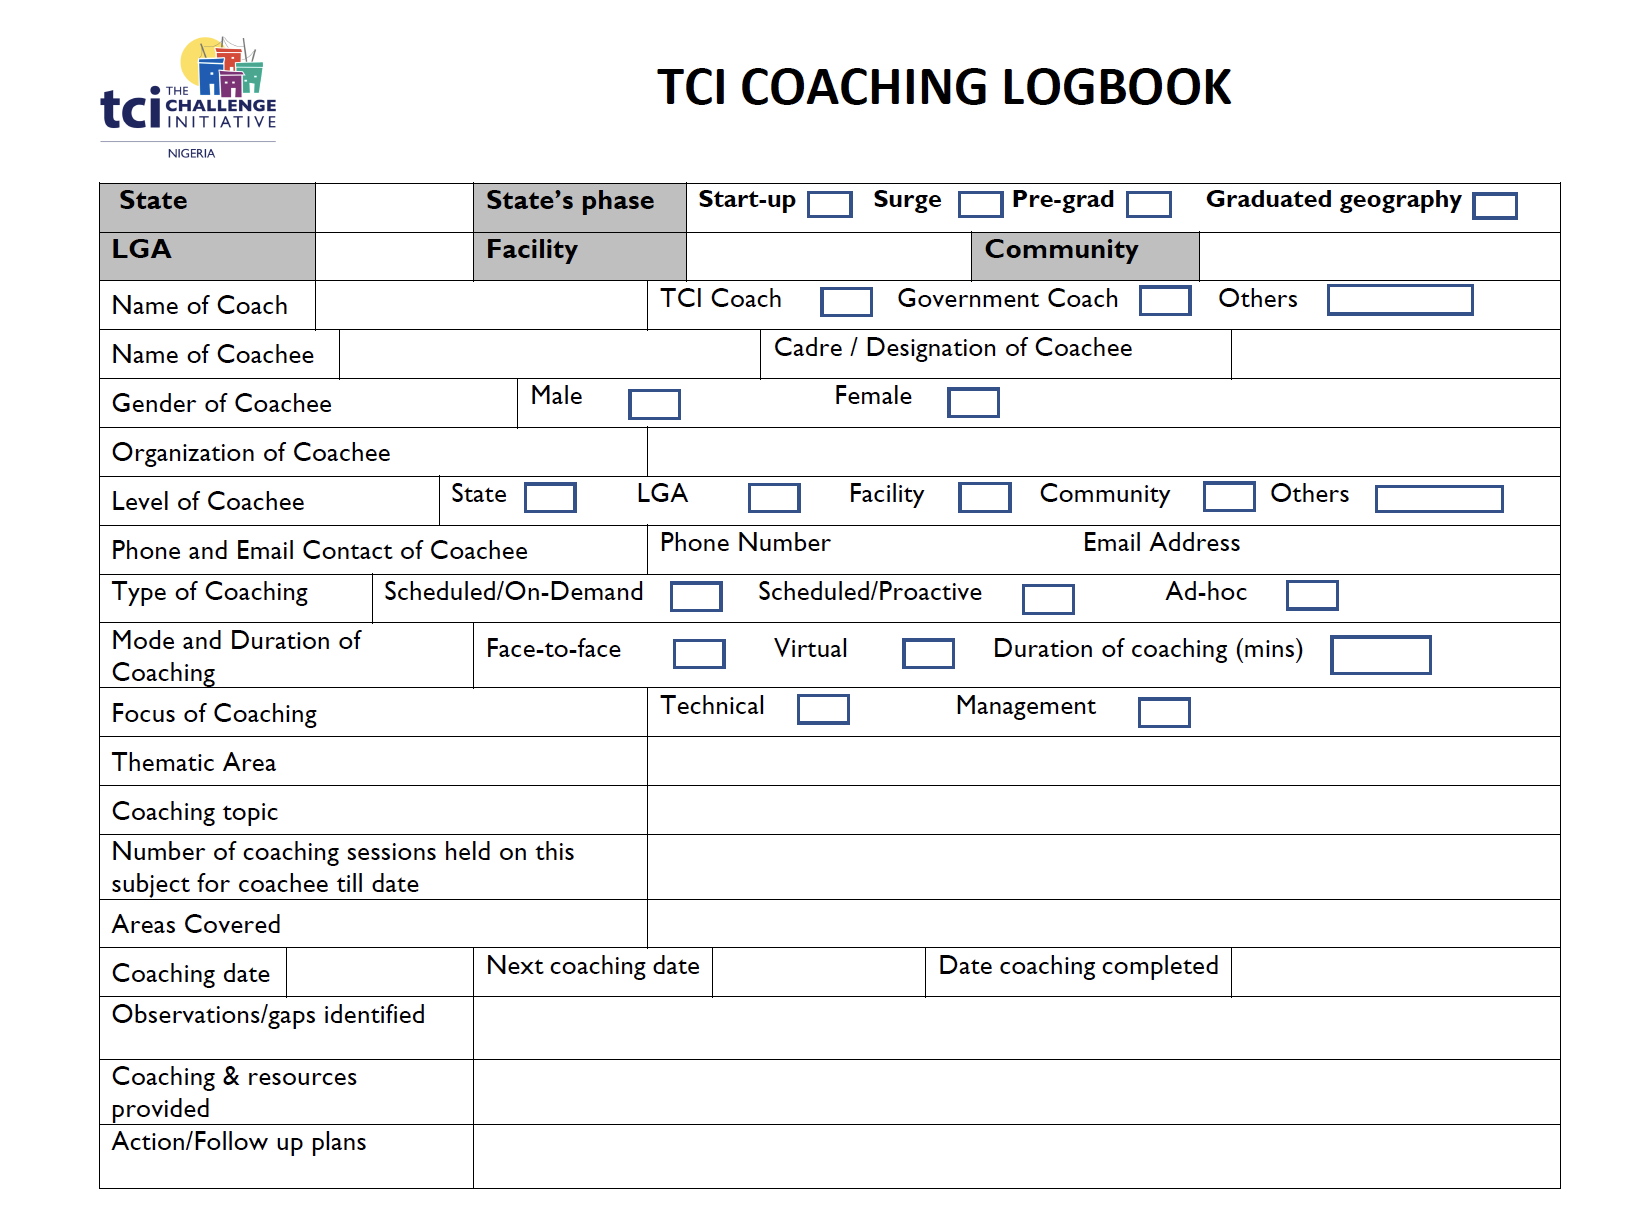 TCI Nigeria Coaching Logbook